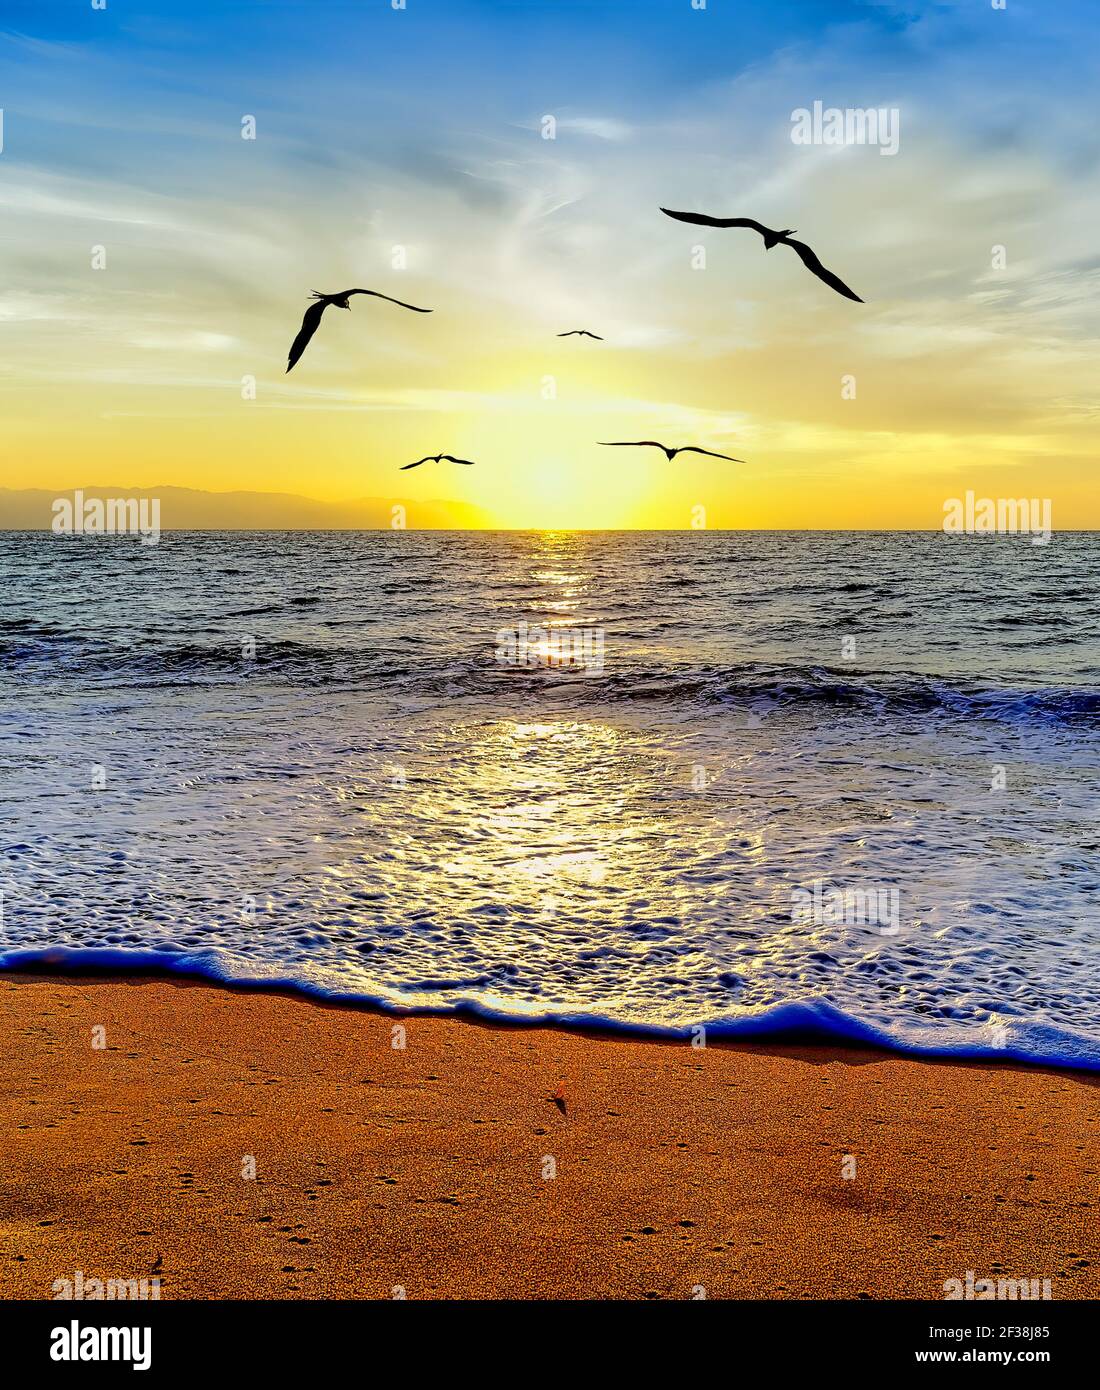 Un gruppo di uccelli stanno volando verso il Sole Setting Su Ocean Horizon in un'immagine in formato verticale Foto Stock